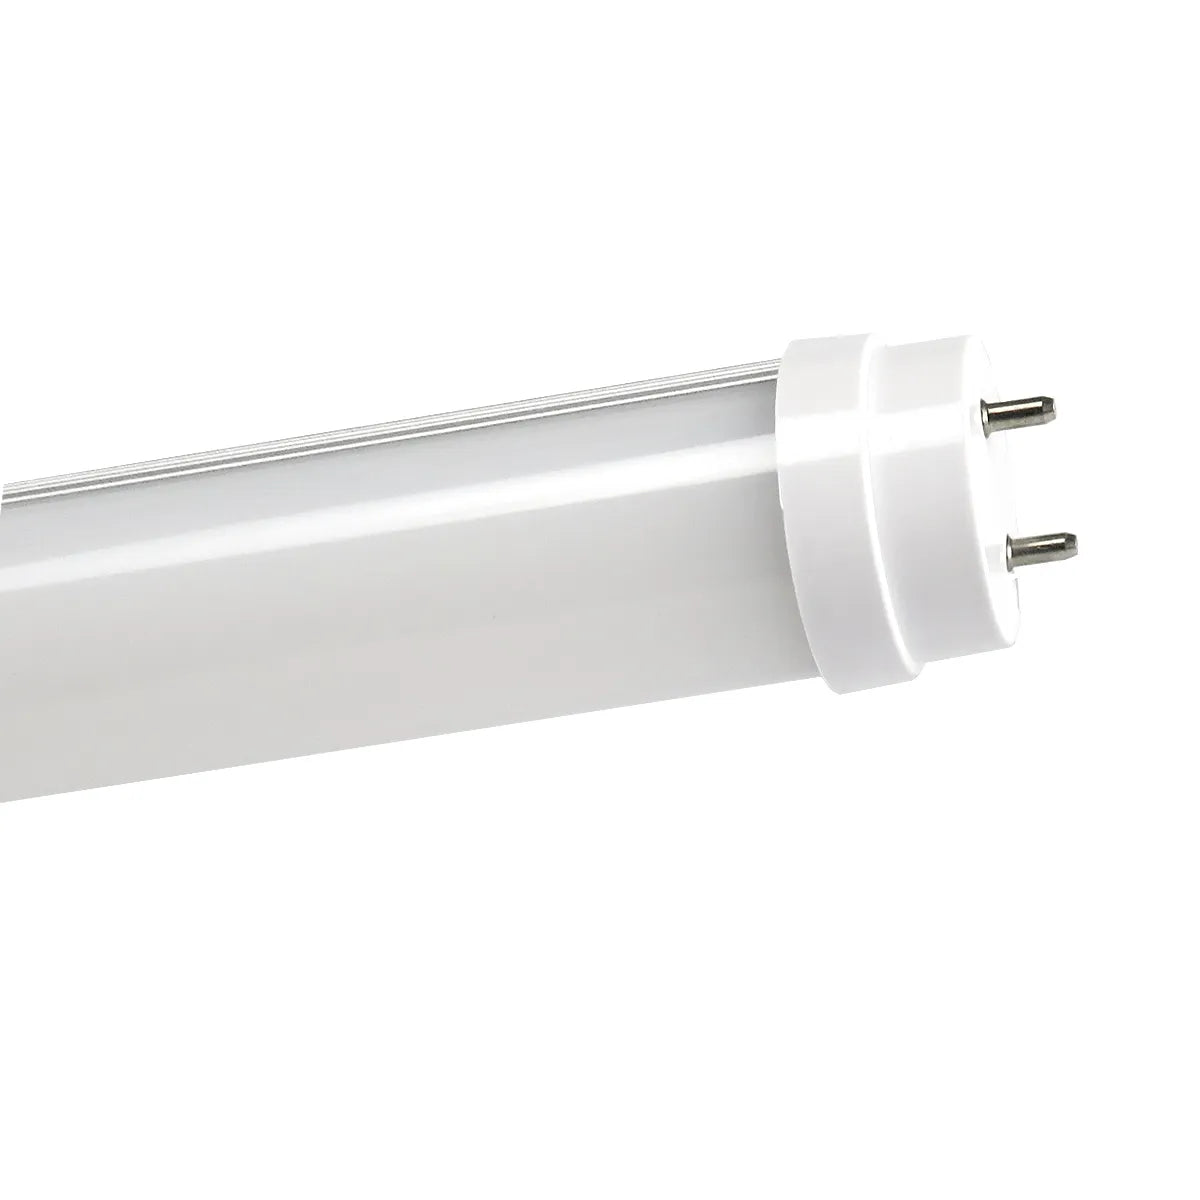 LED Leuchtstoffröhre 60cm/120cm /150cm mit Fassung T8 Röhre Lichtleiste